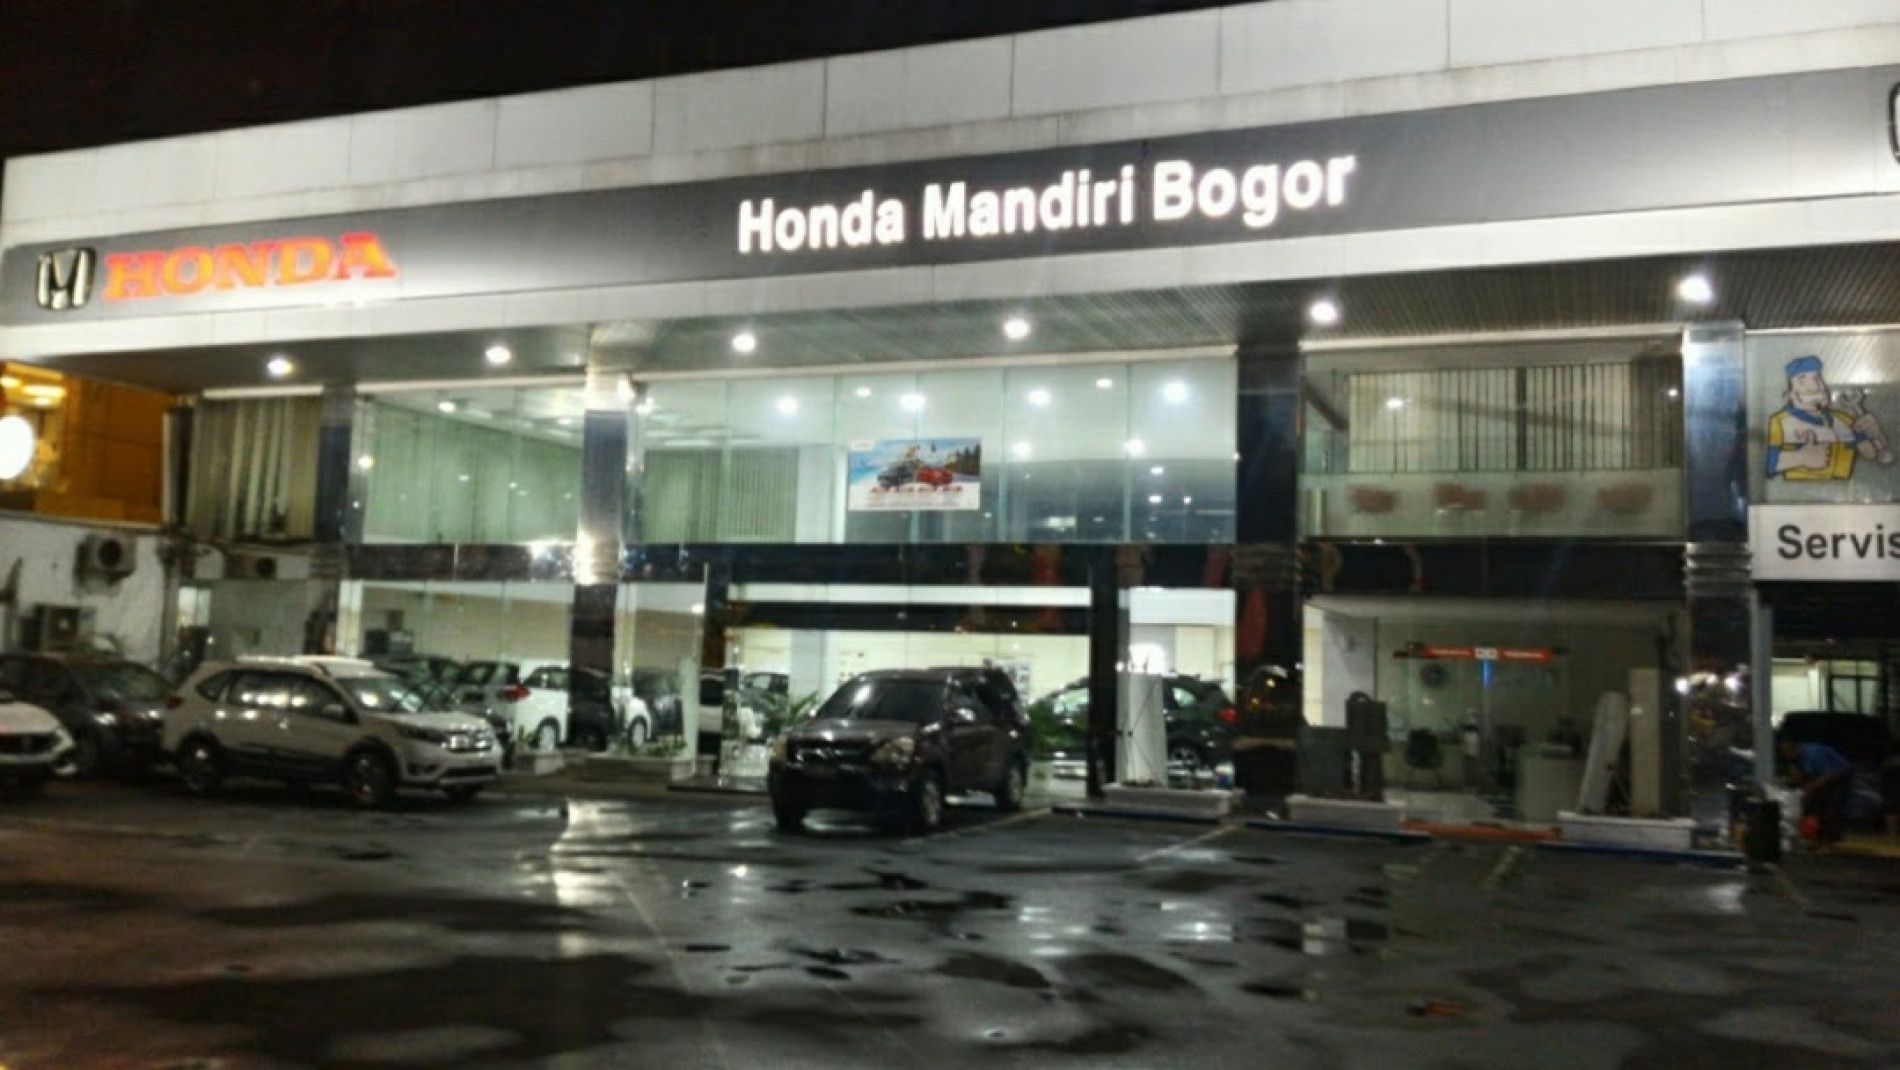 Honda Mandiri Bogor (Service), (PT. Mandiri Perwira Raya Motor) adalah salah satu Dealer resmi di kota bogor